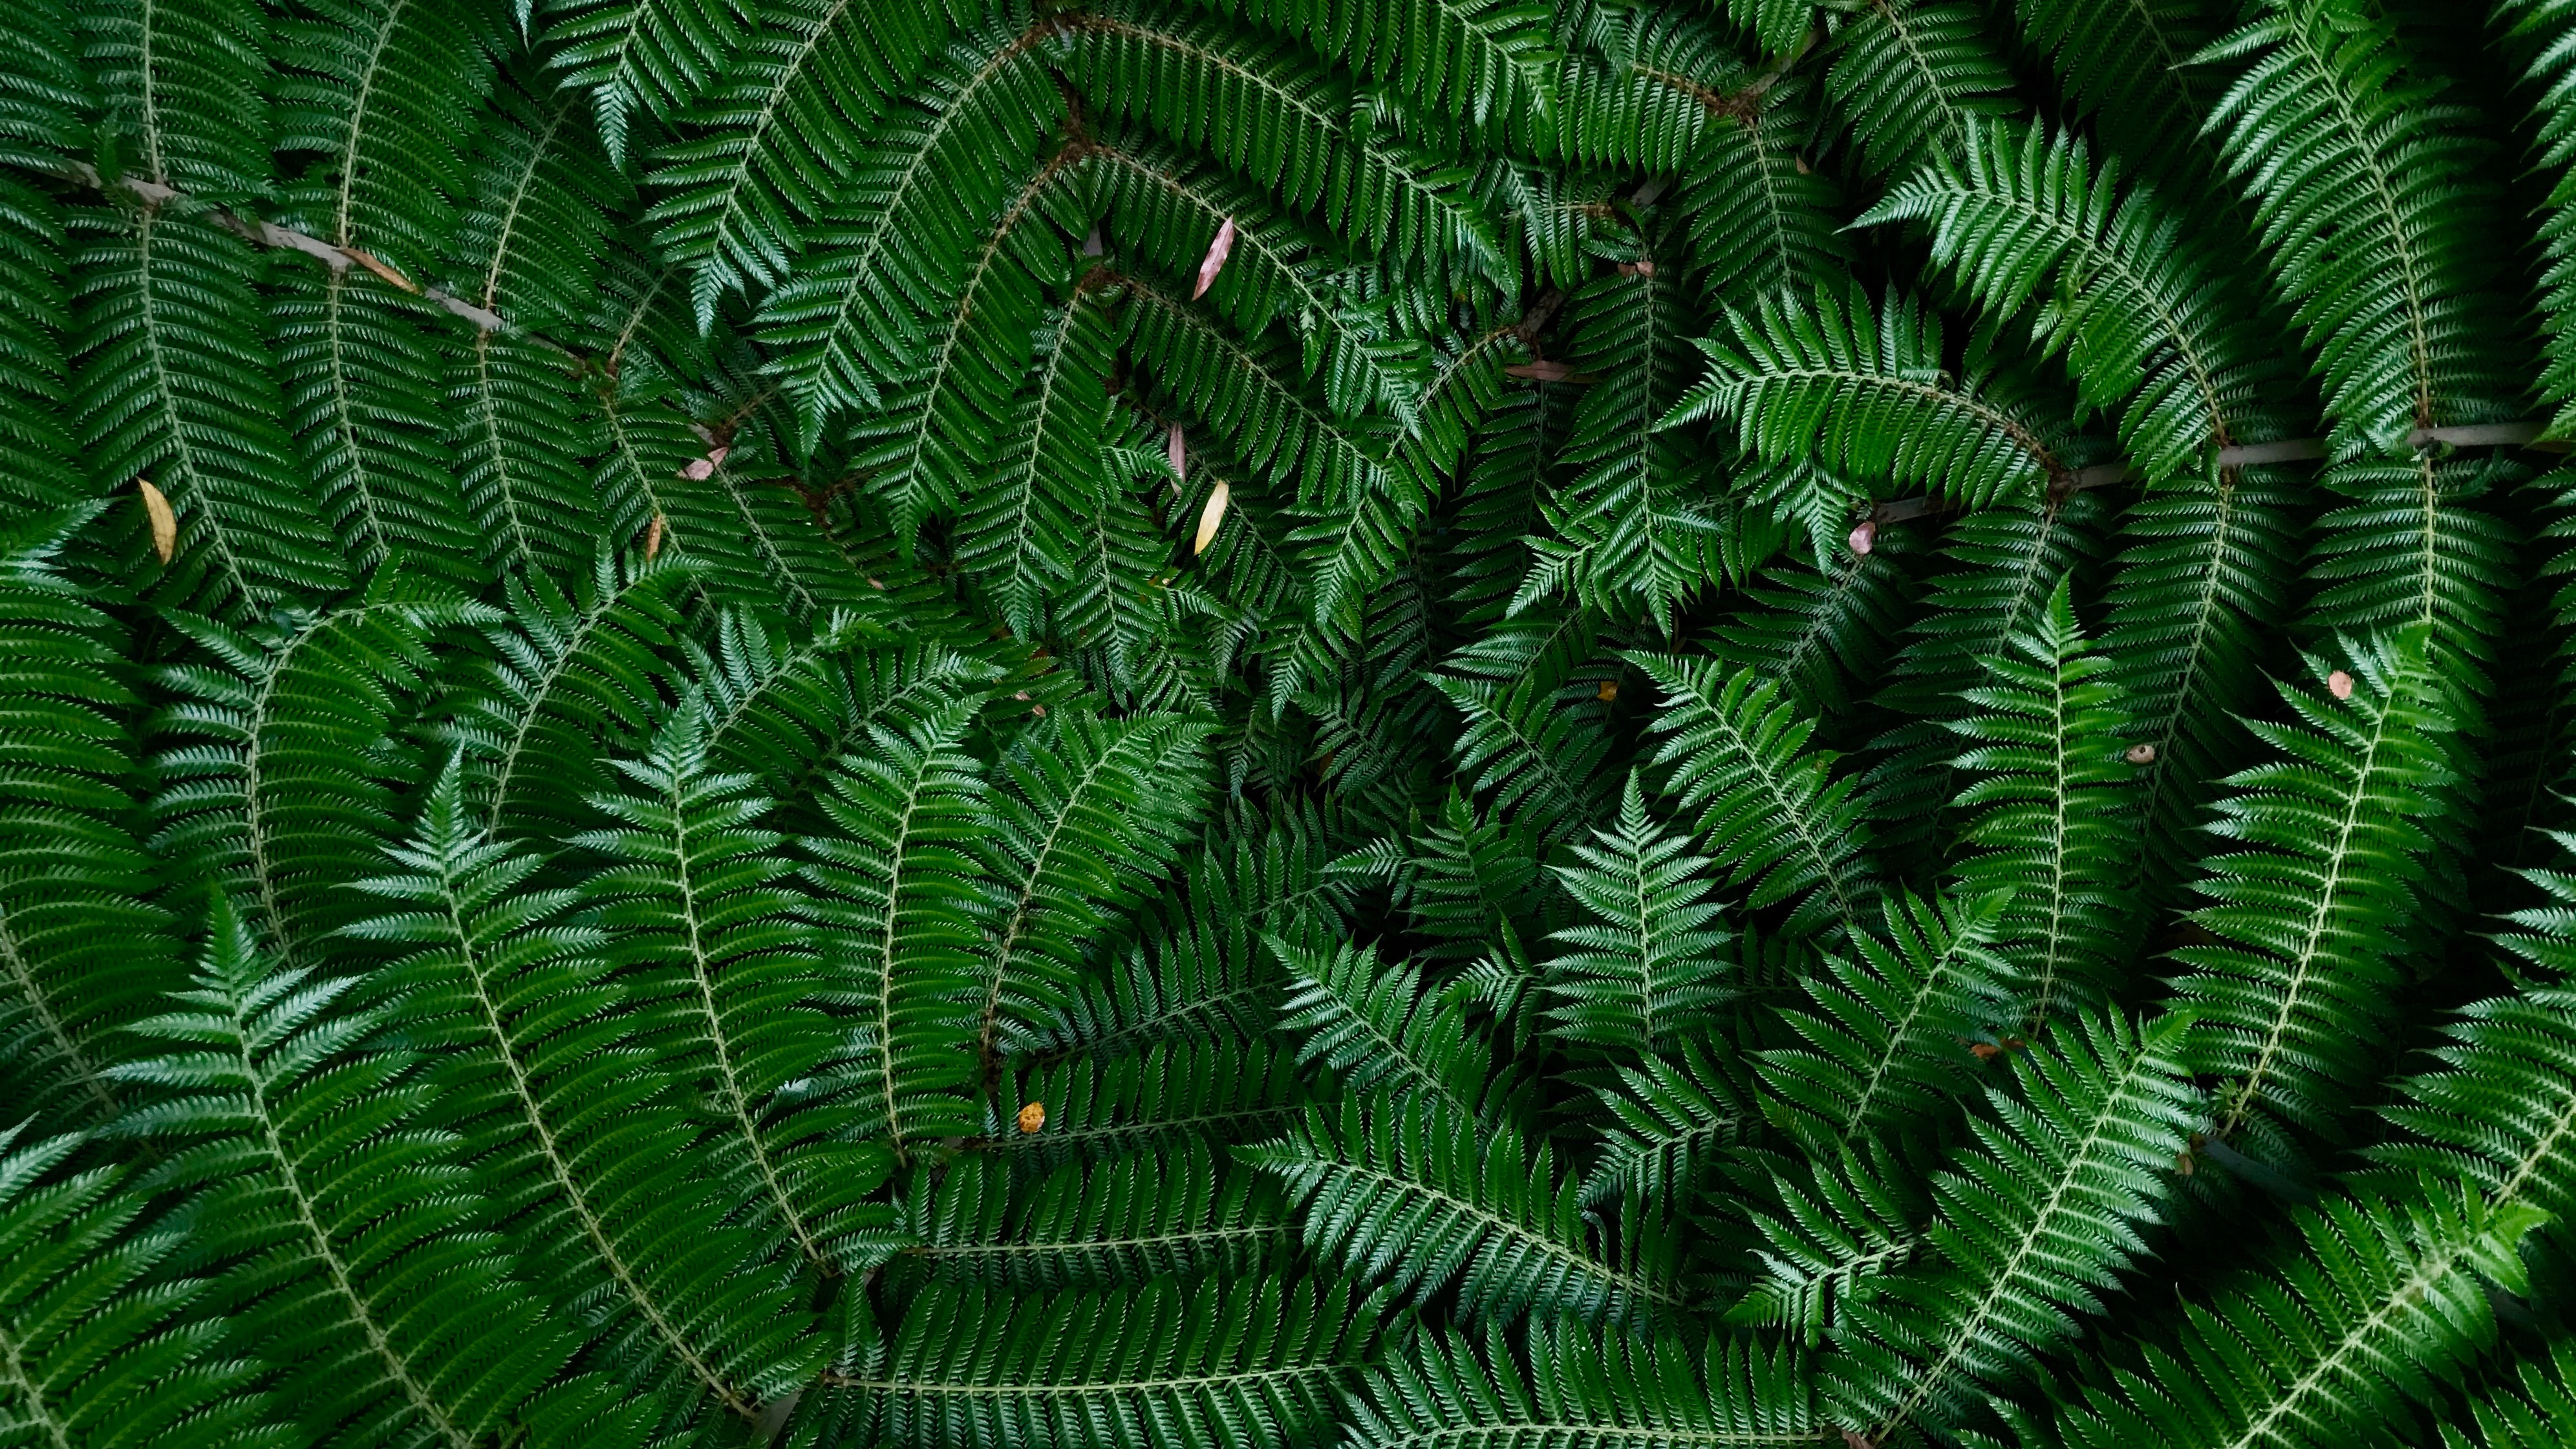 Green silver ferns